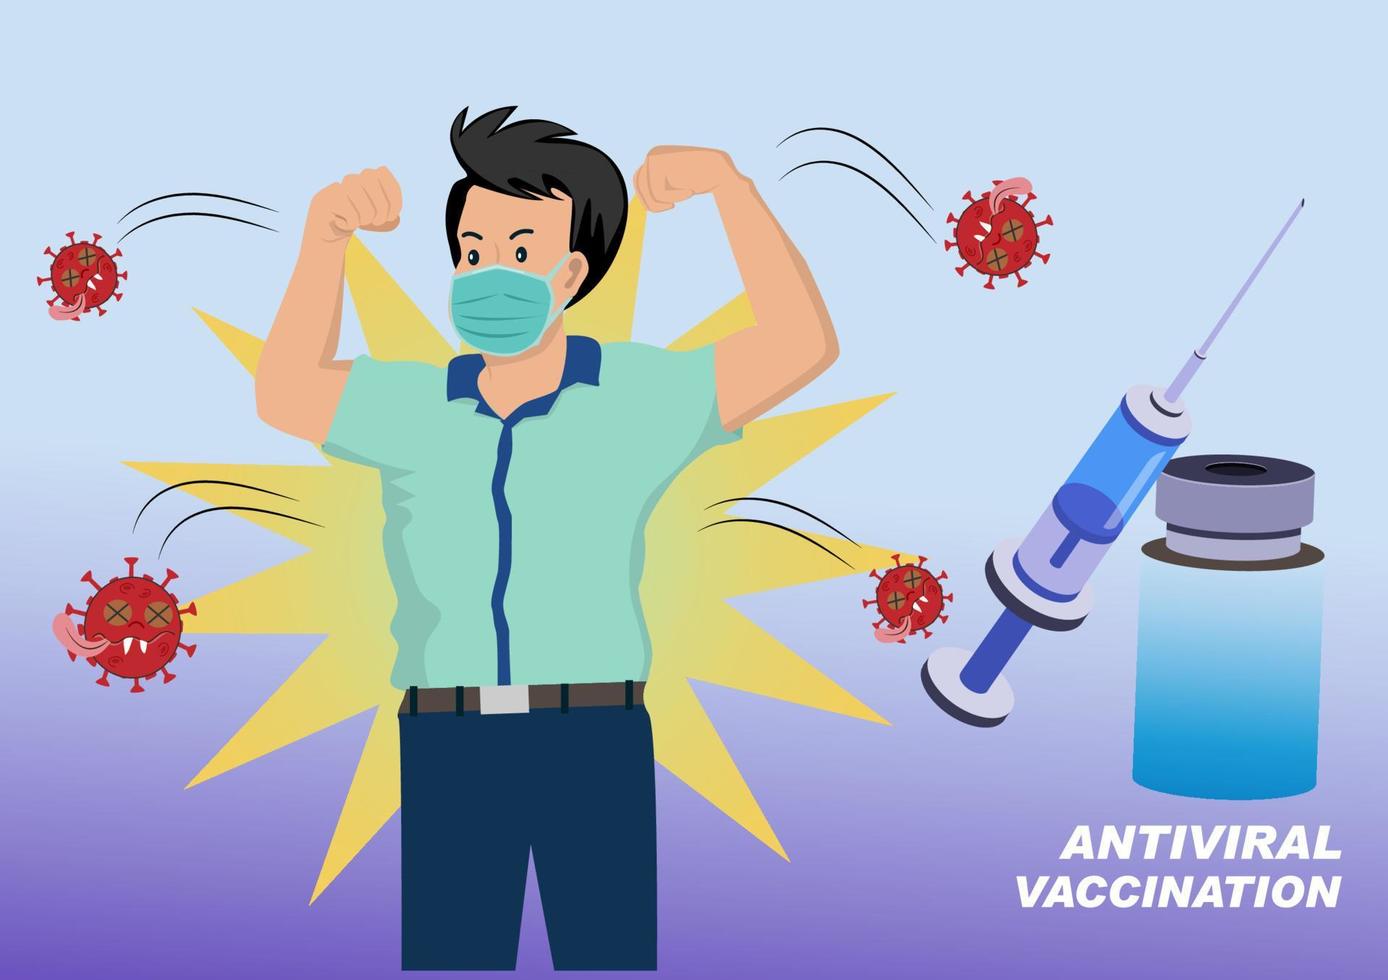 les humains ou les personnes combattent la couronne rouge ou le covid-19 en se faisant vacciner contre l'épidémie. vecteur d'illustration de dessin animé de style plat